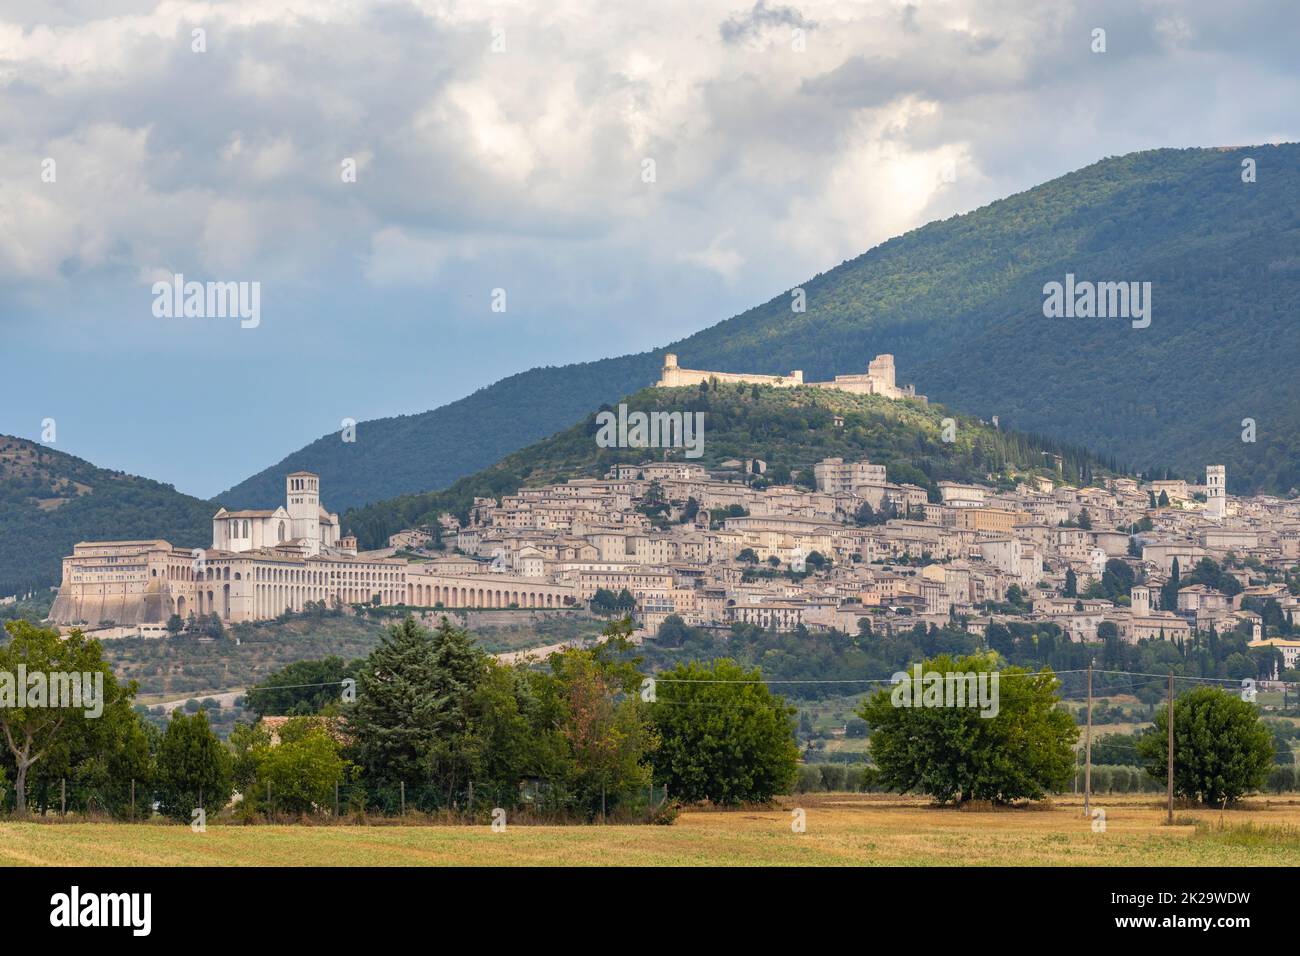 Vue panoramique de la vieille ville d'Assise, province de Pérouse, région de l'Ombrie, Italie Banque D'Images